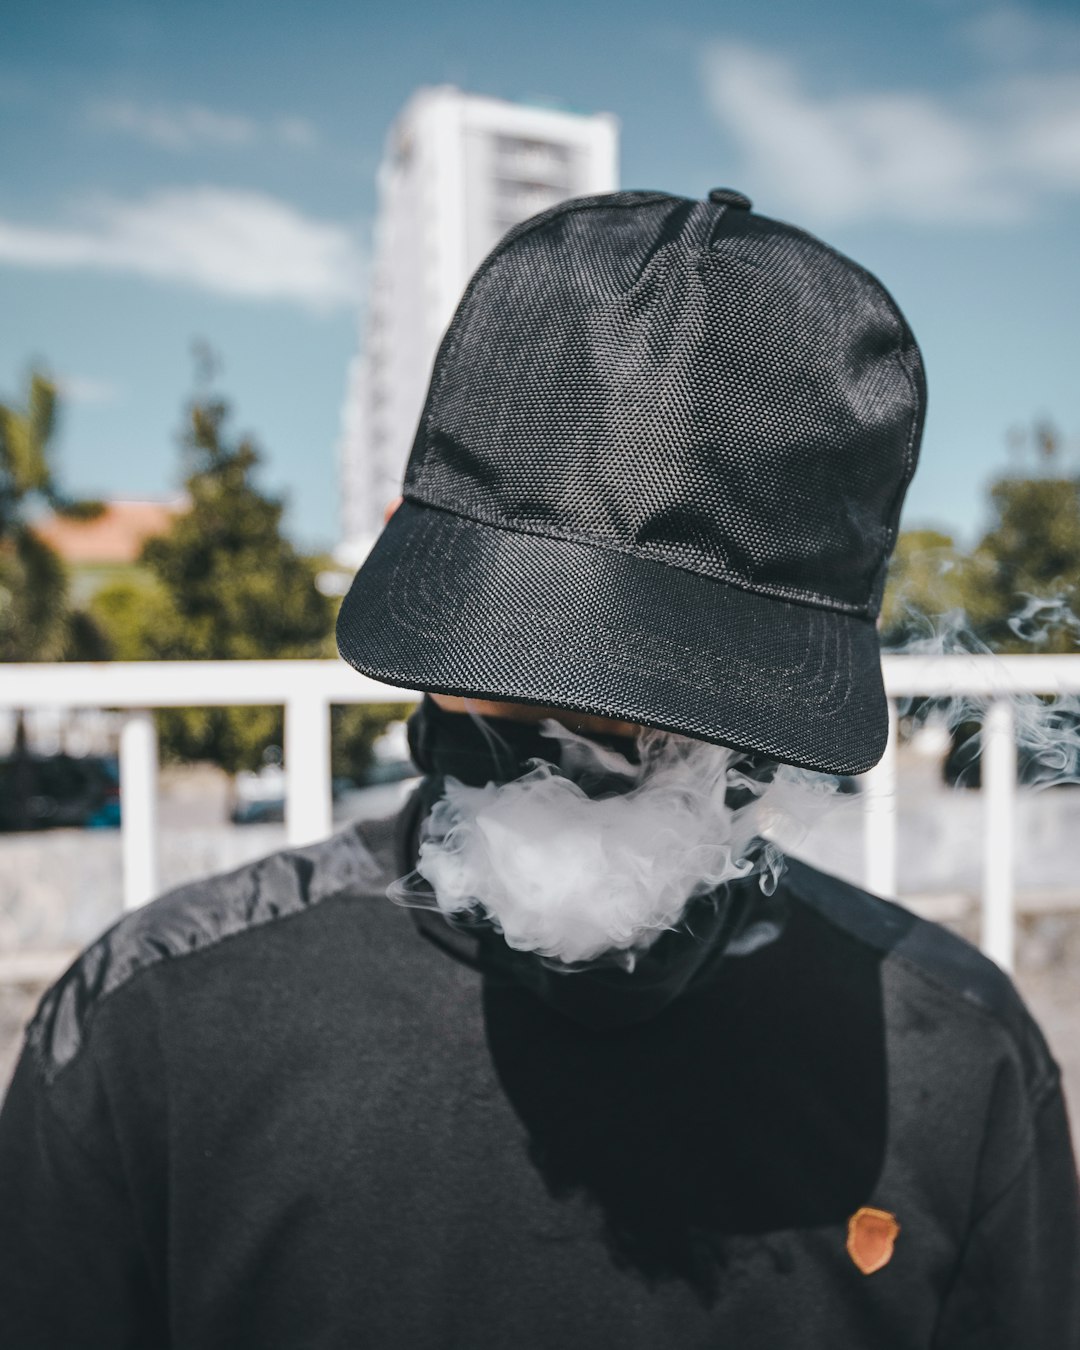 Hidden person exhaling smoke